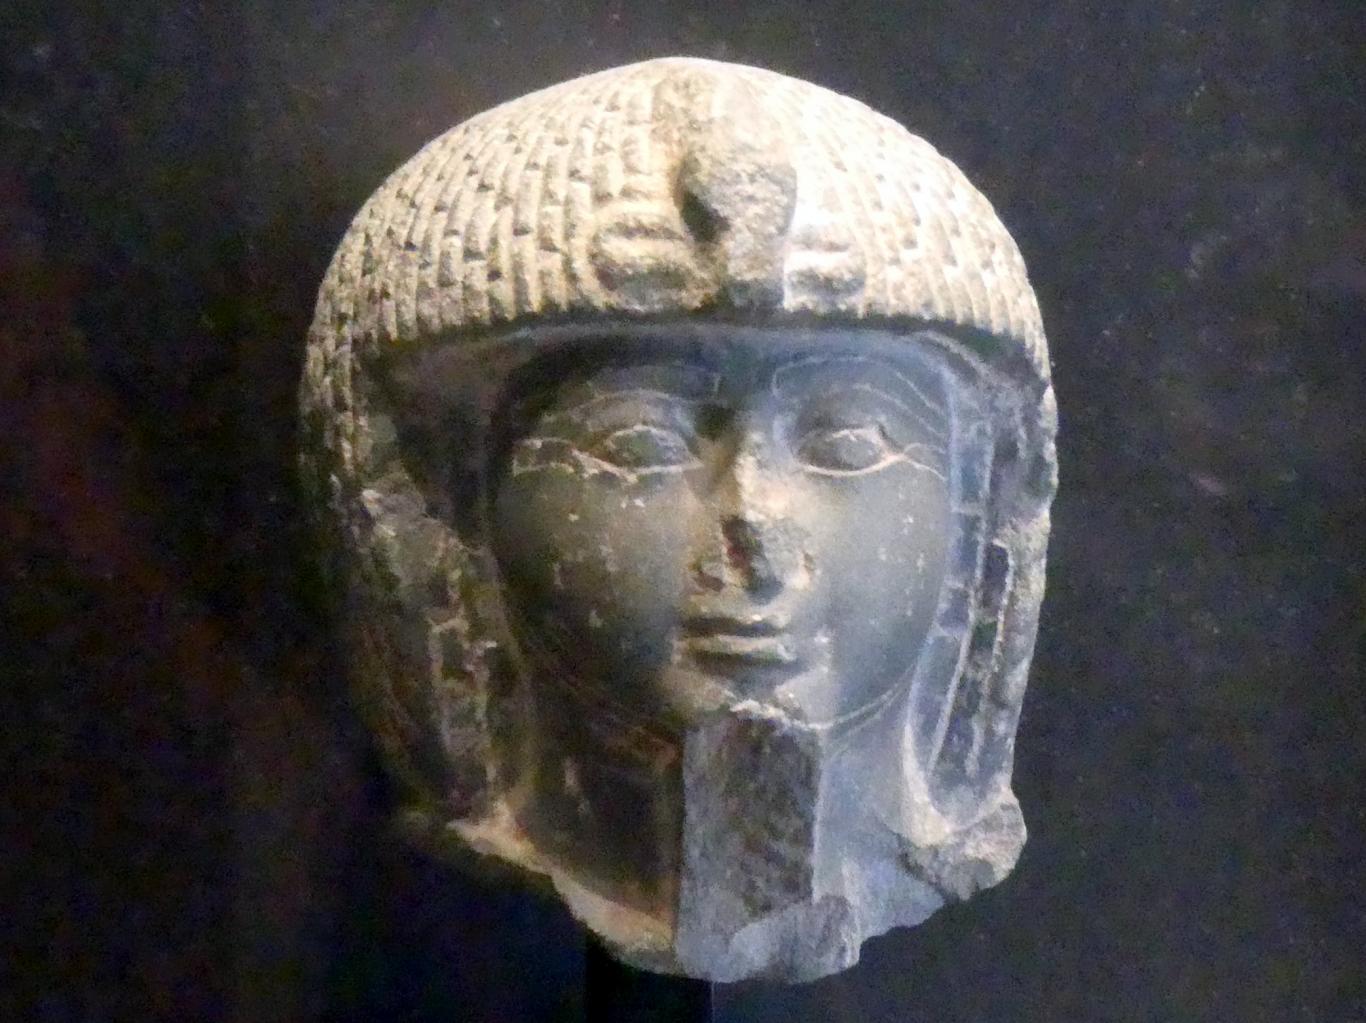 Kopf einer königlichen Stabträgerstatue, 19. Dynastie, 953 - 887 v. Chr., 1280 - 1150 v. Chr., Bild 1/3